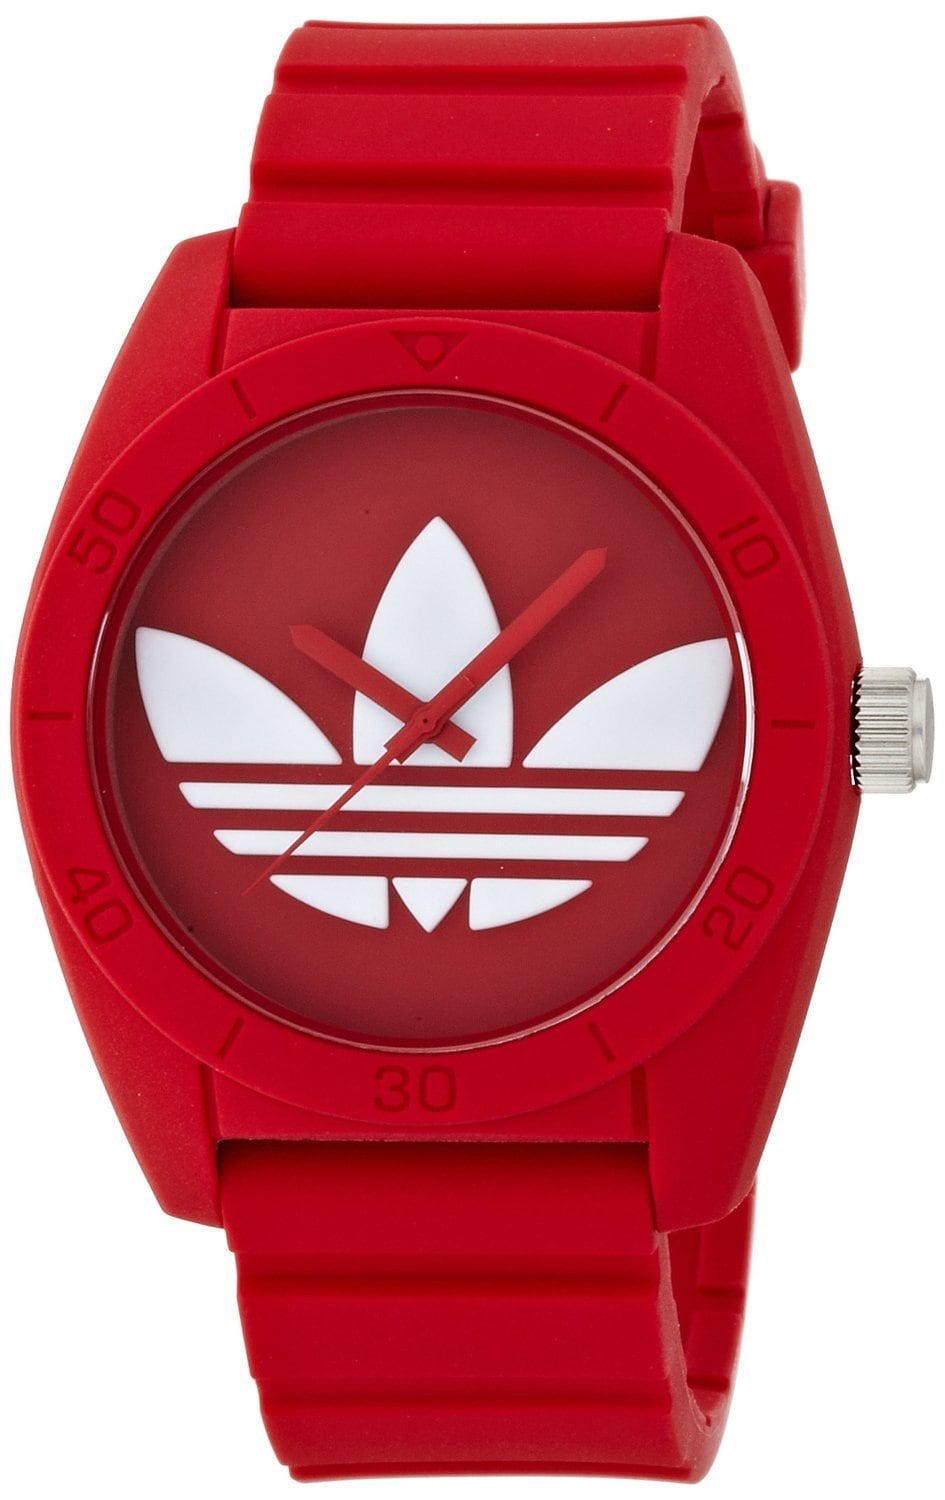 【新品】アディダス adidas 腕時計 サンティアゴ ADH6169 青